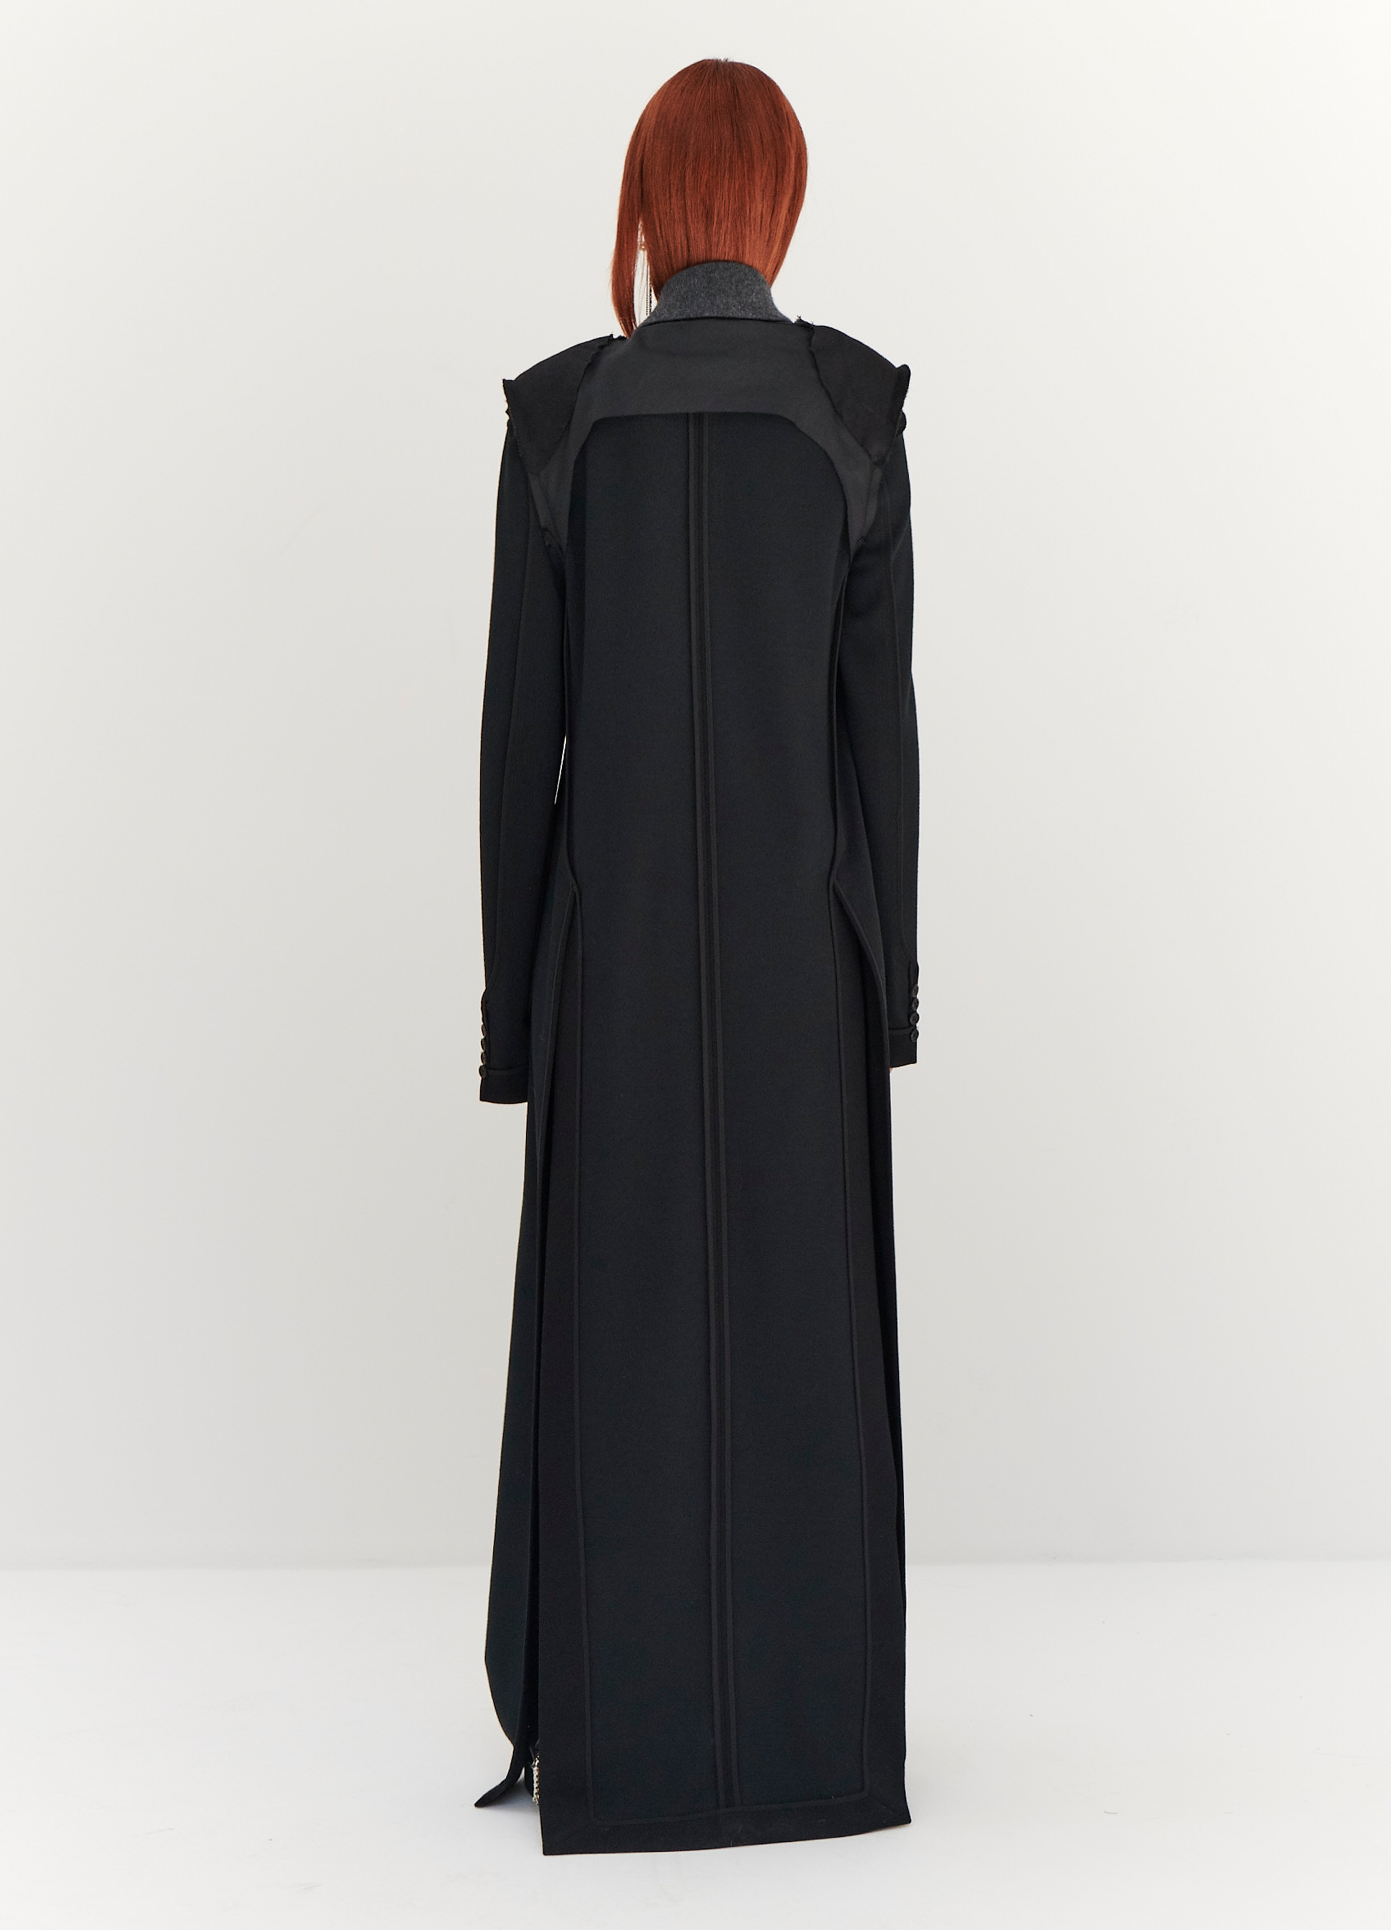 MONSE Floor Length Reversed Coat in Black on model full back view